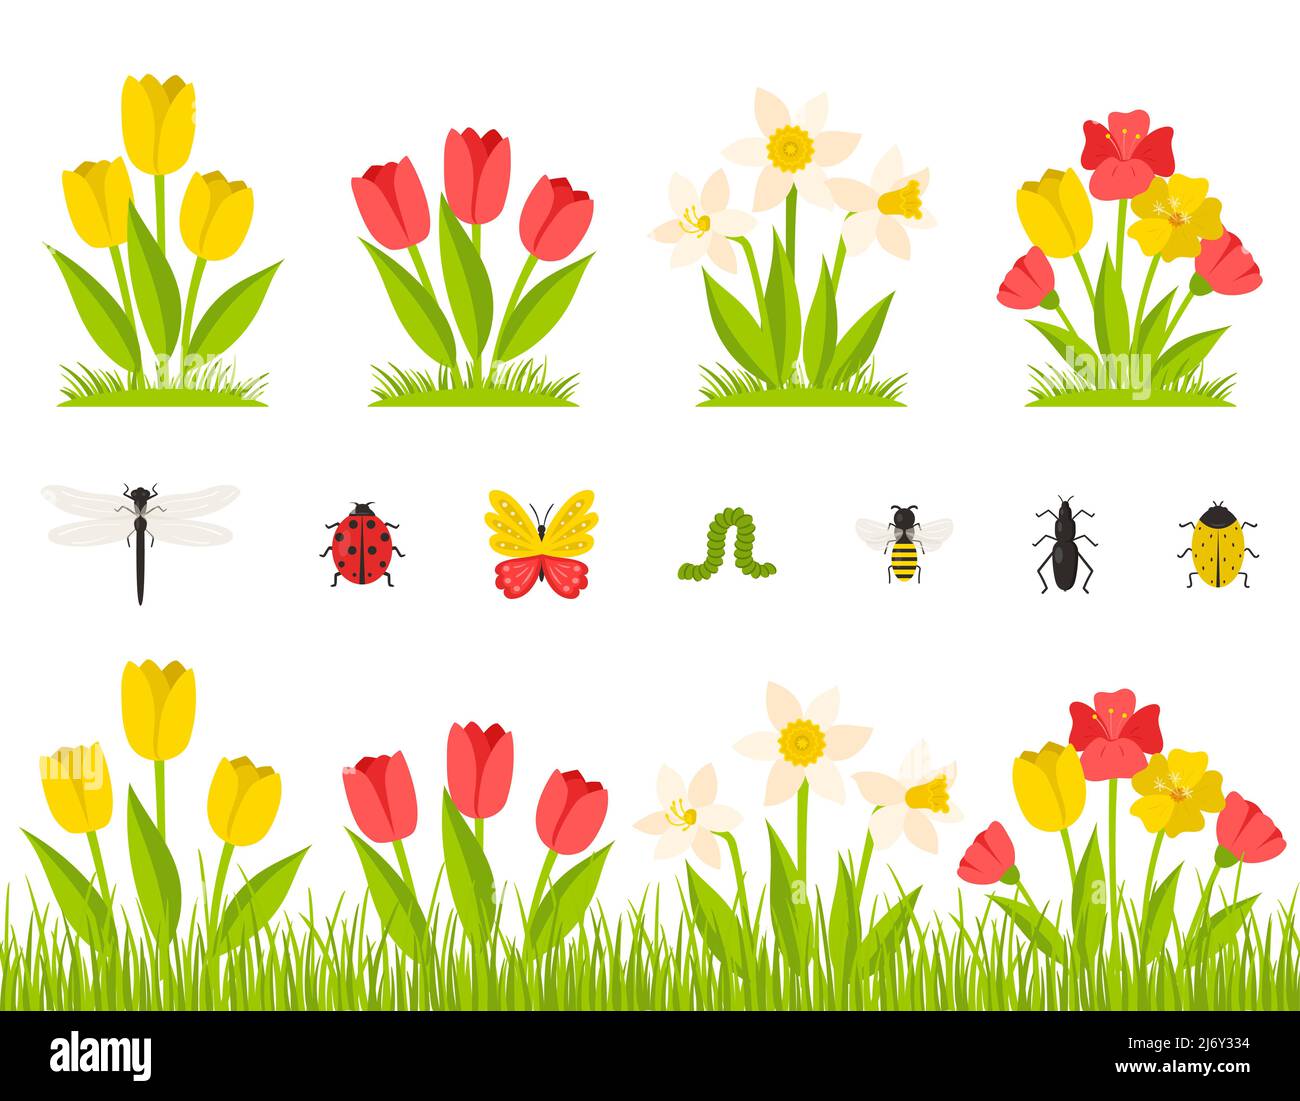 Giardino primavera fiori. Un cespuglio di tulipani, narcisi, papaveri. Fiori in erba, prato. Raccolta di insetti. Elementi di disegno botanici in un carto Illustrazione Vettoriale